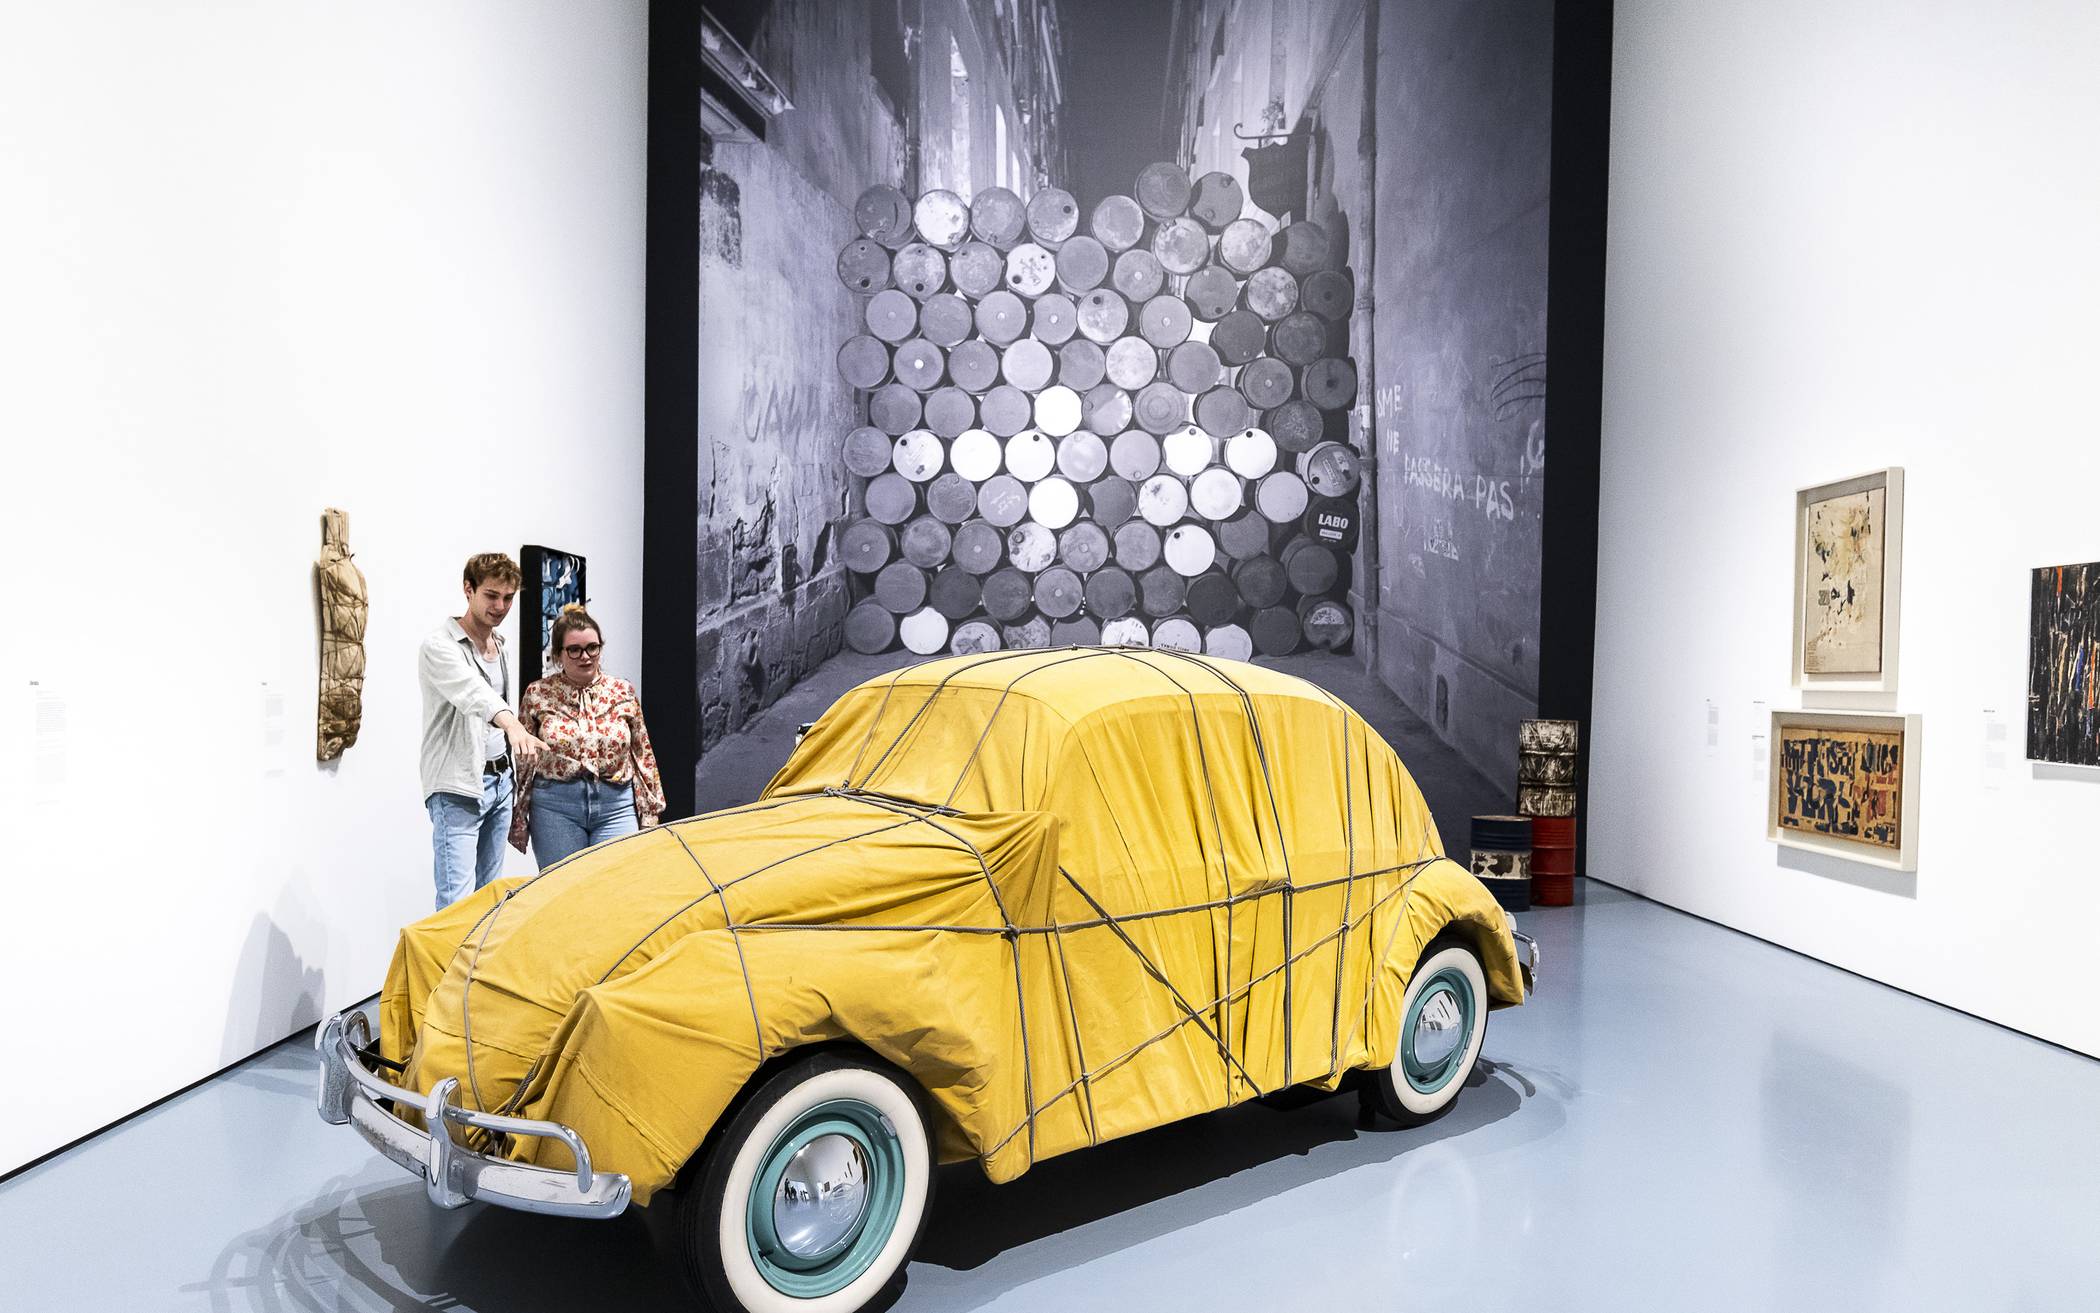  Blick in die Austellung „Christo und Jeanne-Claude“ im Kunstpalast.  